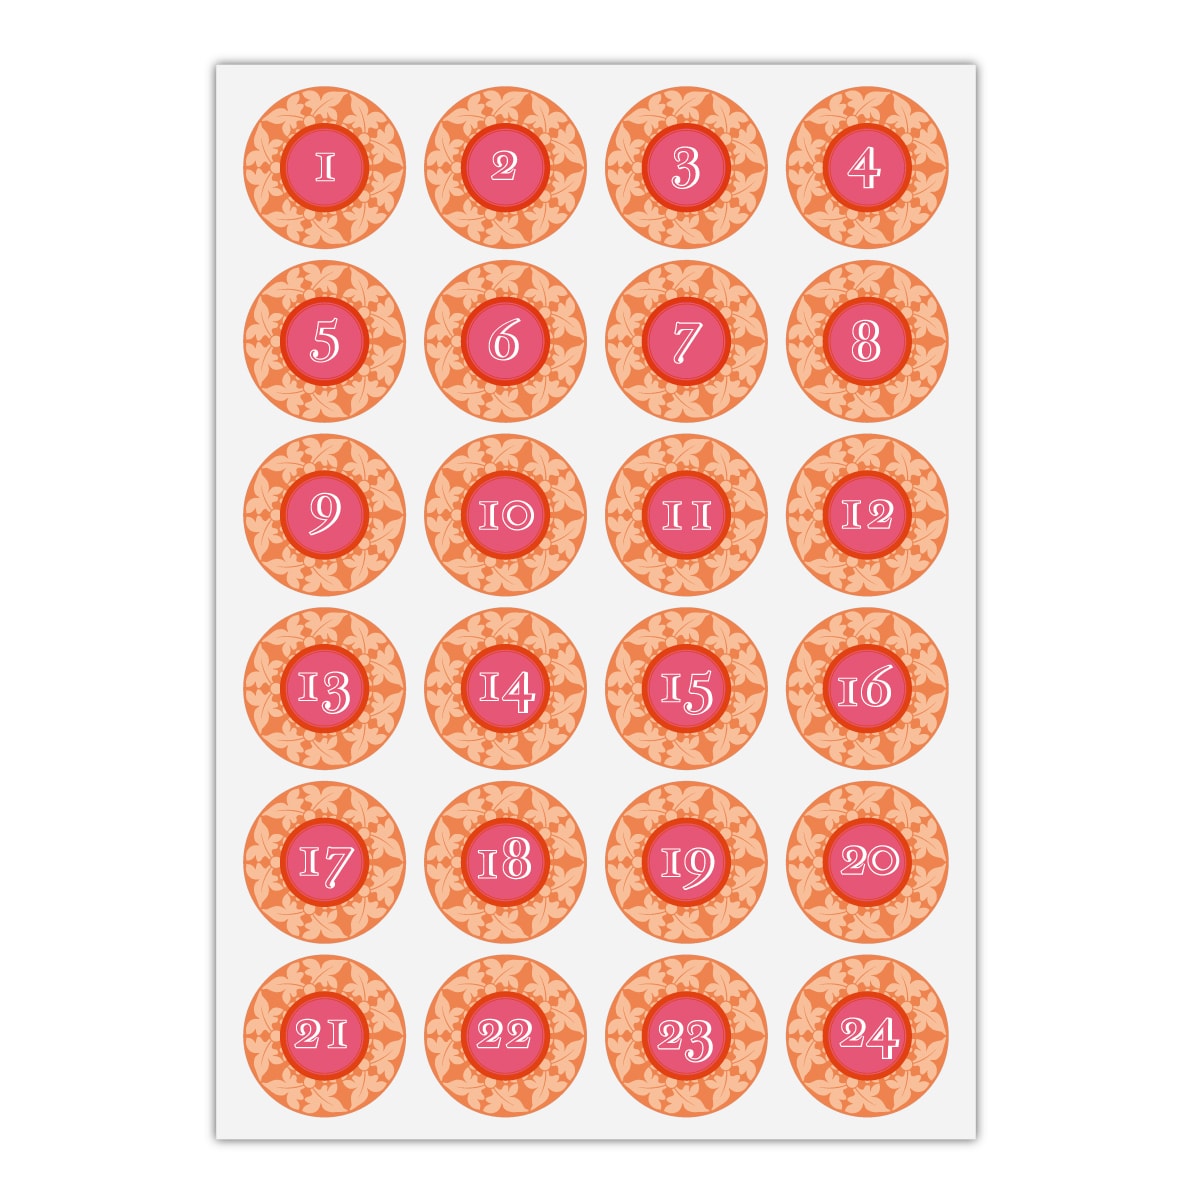 Kartenkaufrausch Sticker in orange: 24 schöne Advents Aufkleber